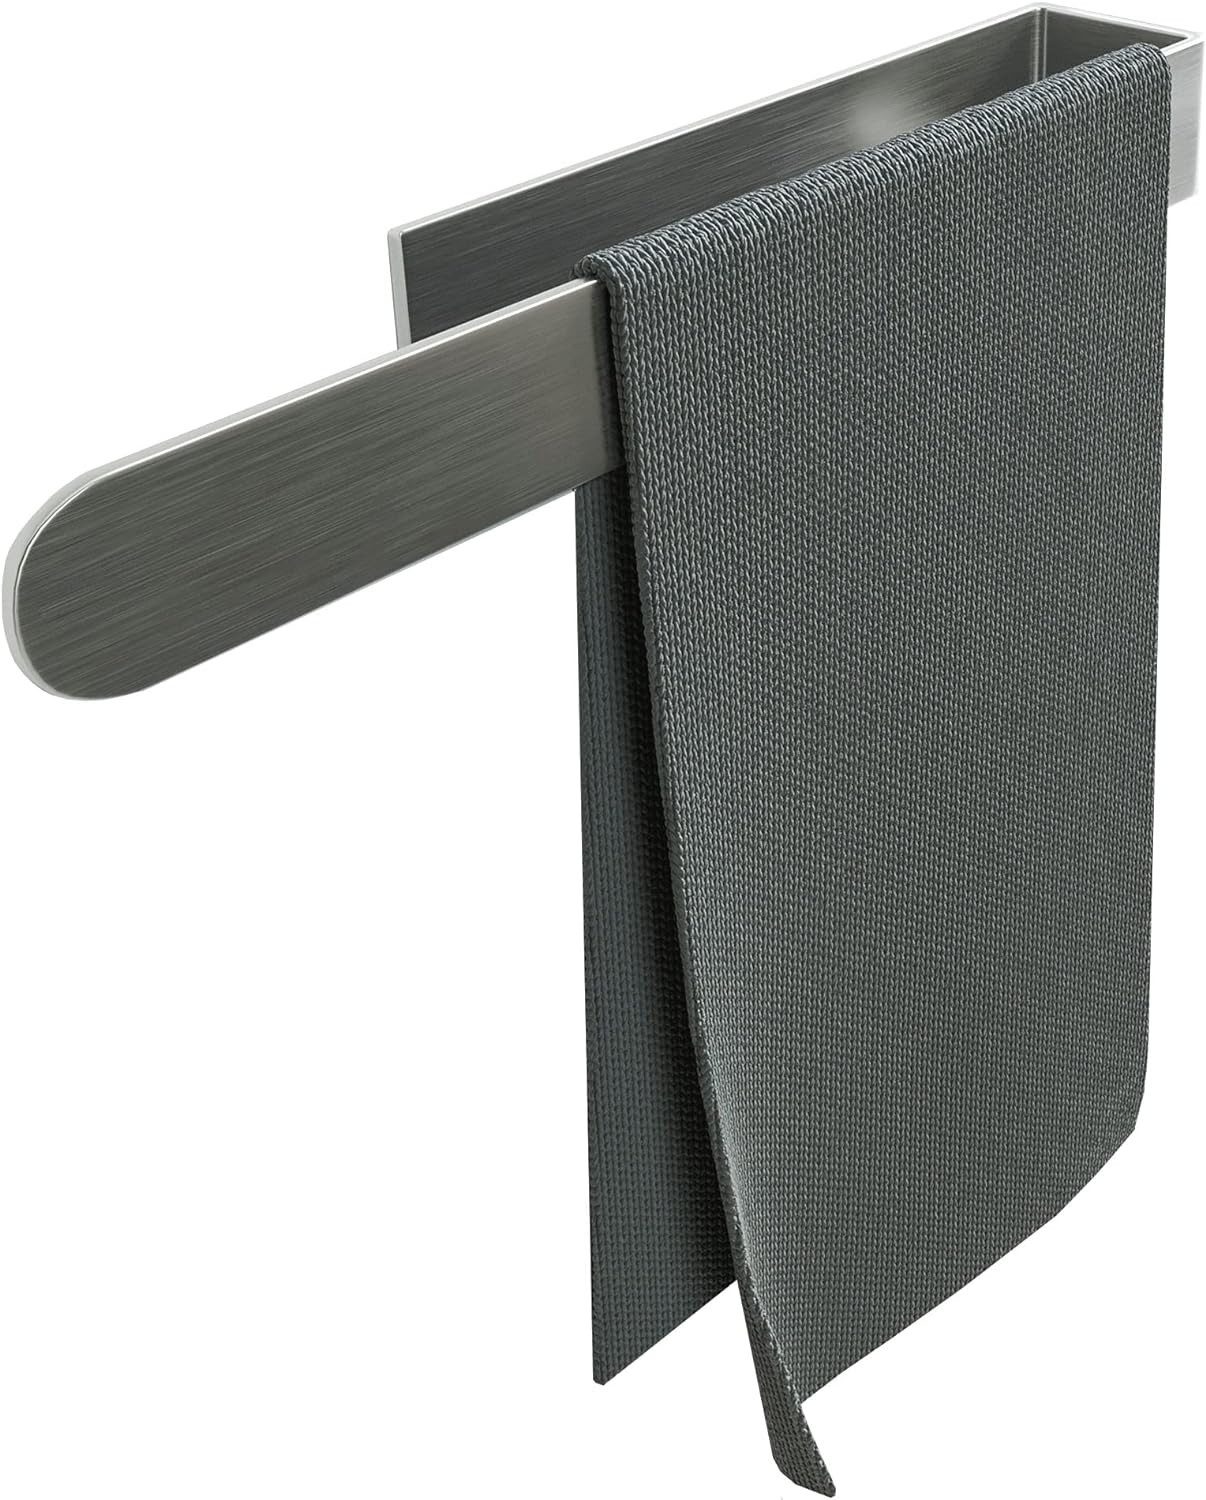 Bernstein Handtuchhalter HH35, ohne Bohren / selbstklebend / für Badmöbel / Farbe wählbar / 35 cm